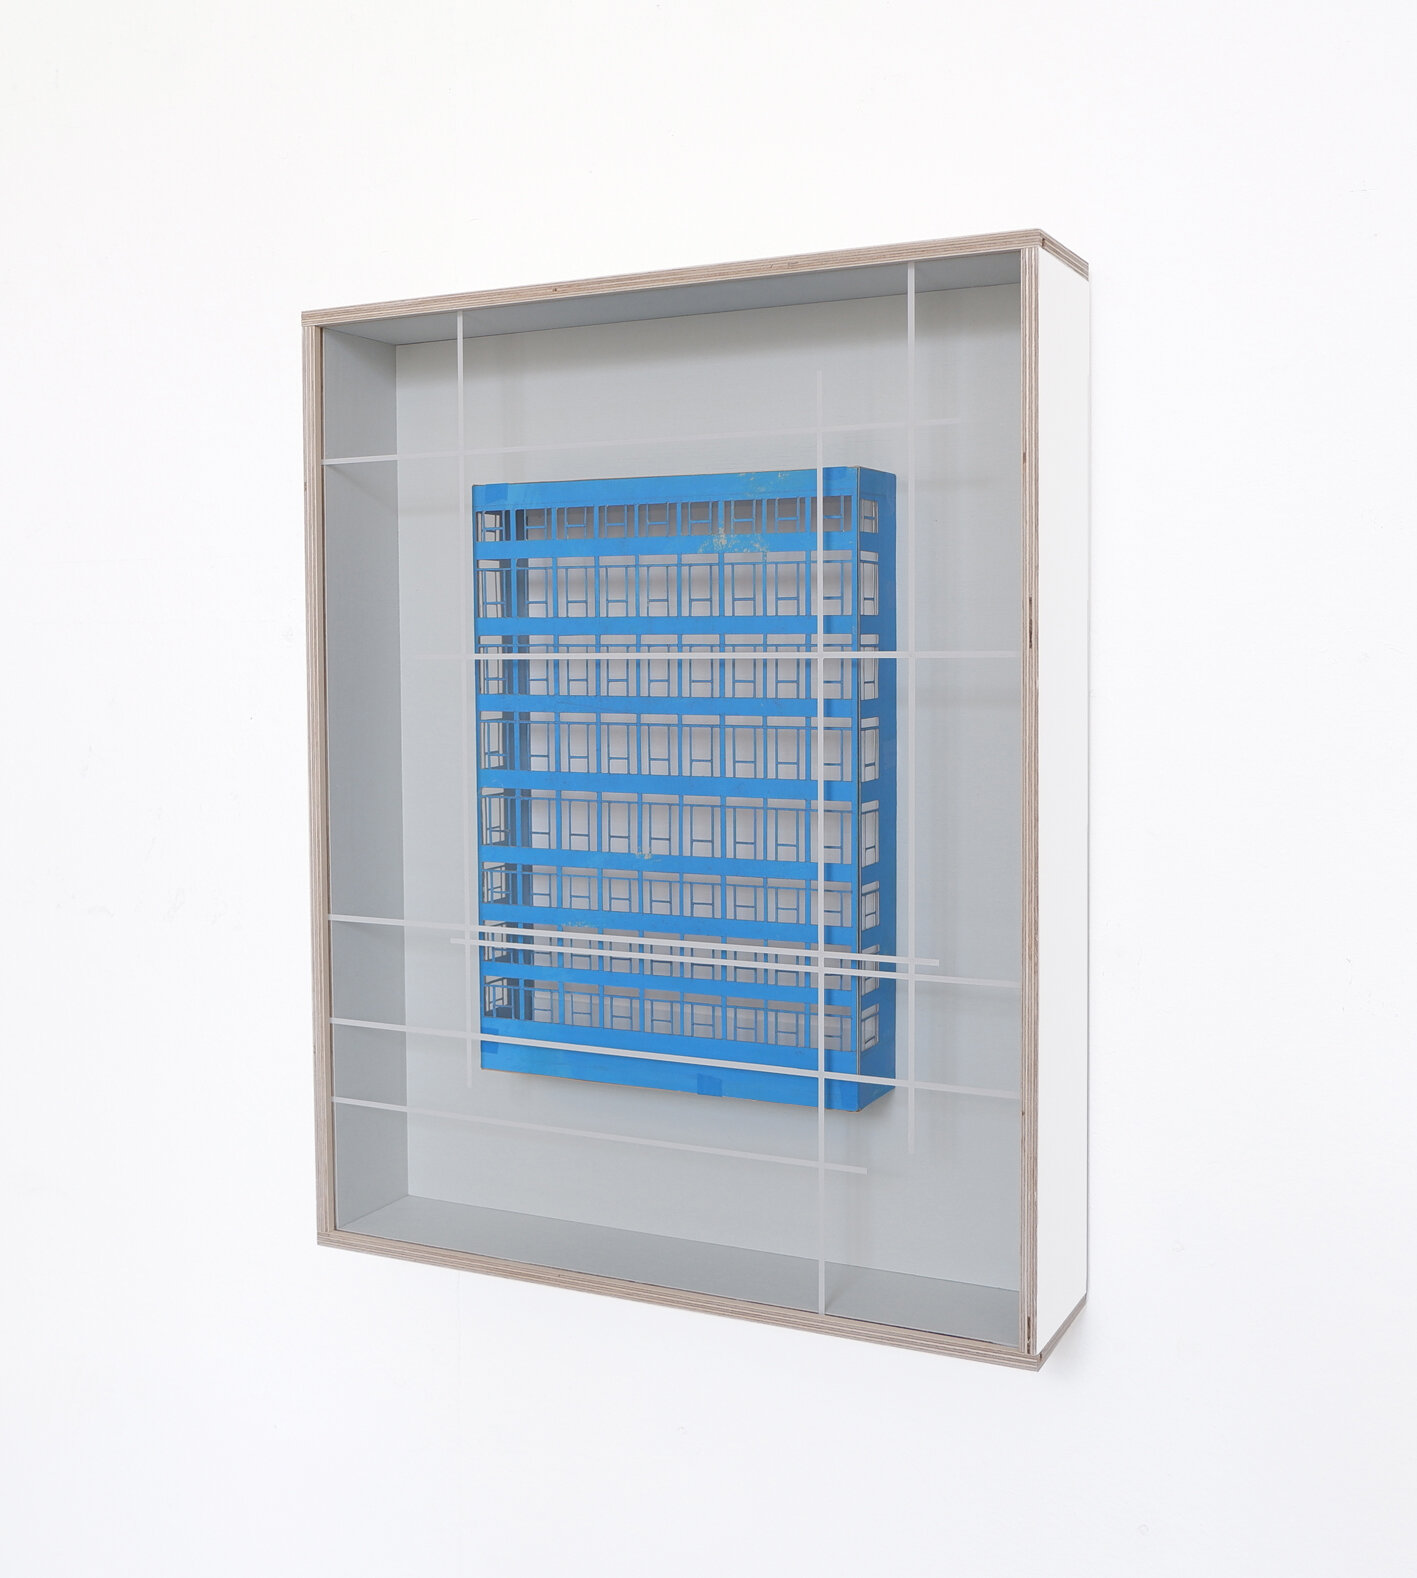  Die Fehlbarkeit der Einsichten BR, 2019,  wood, cardboard, acrylic glass, paint, 56 x 44 x 10 cm 